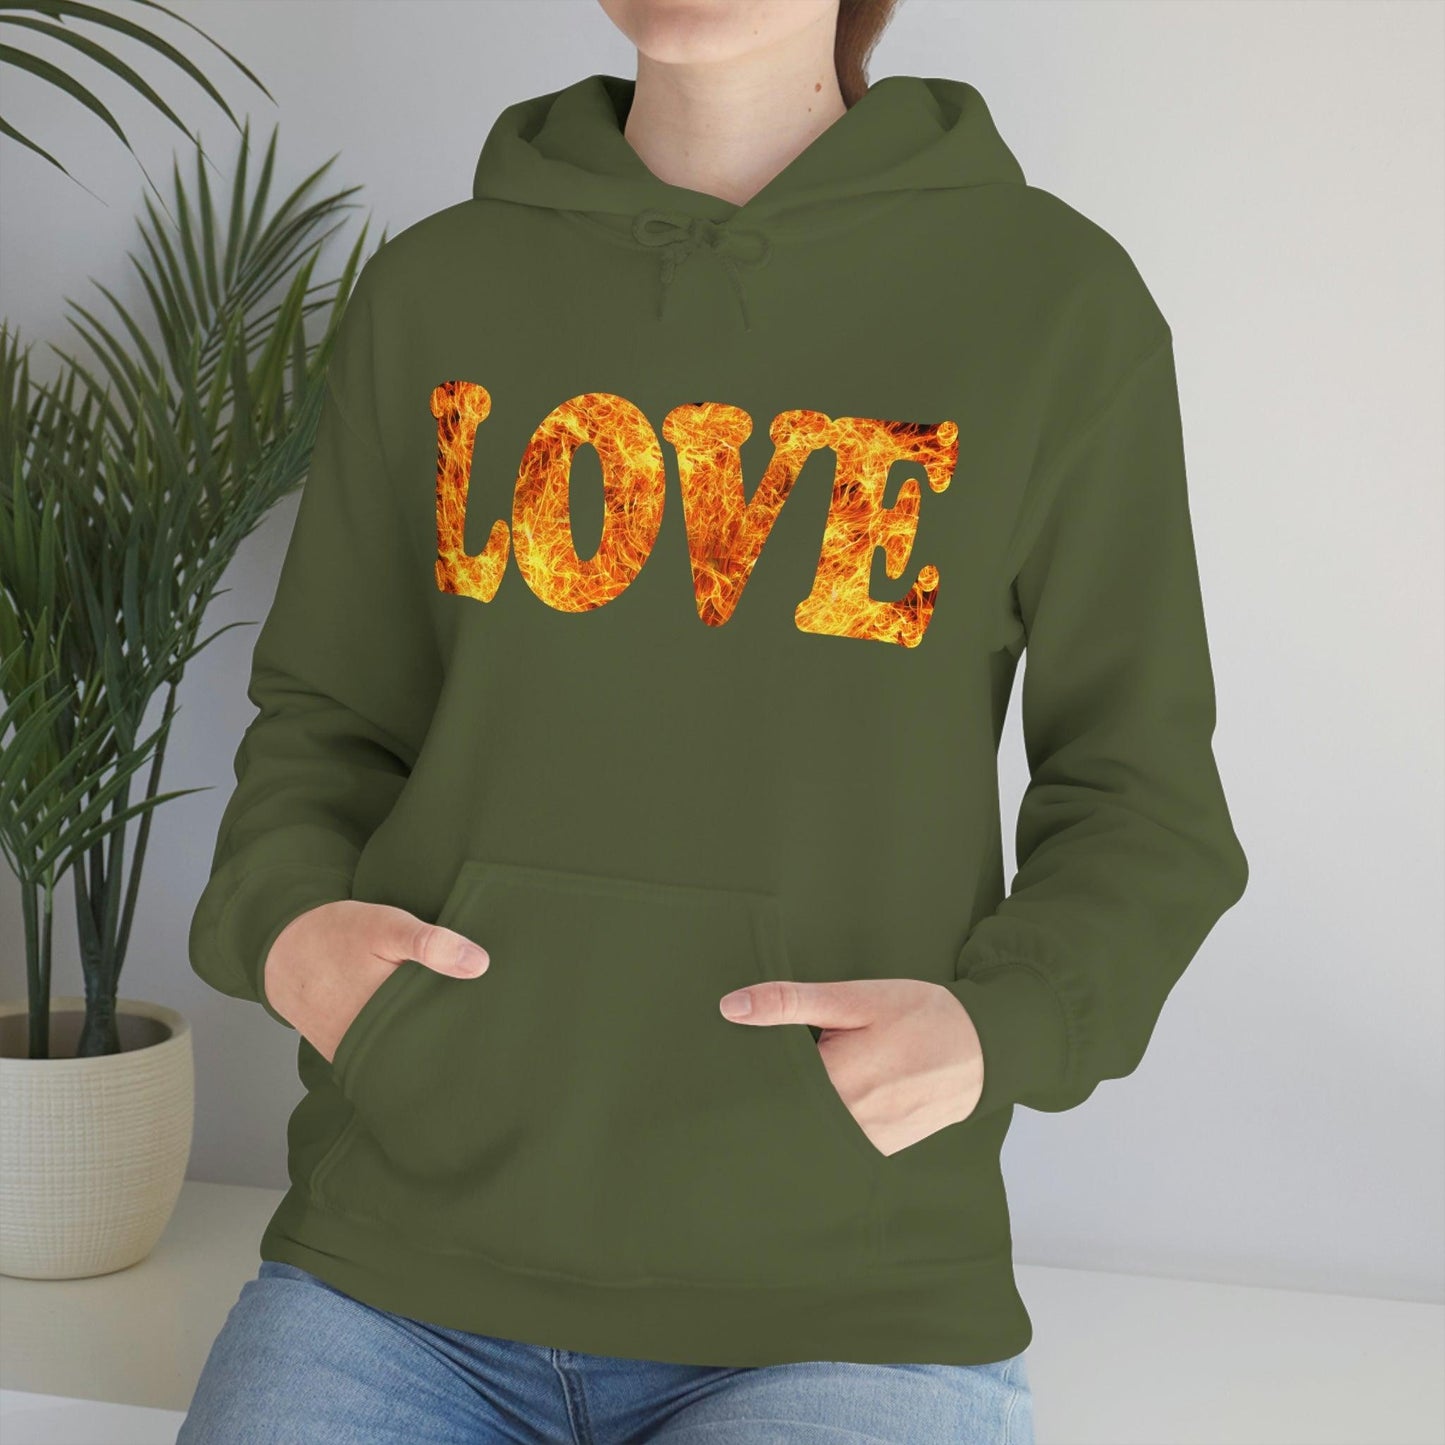 Love Fire Hooded Sweatshirt - Giftsmojo